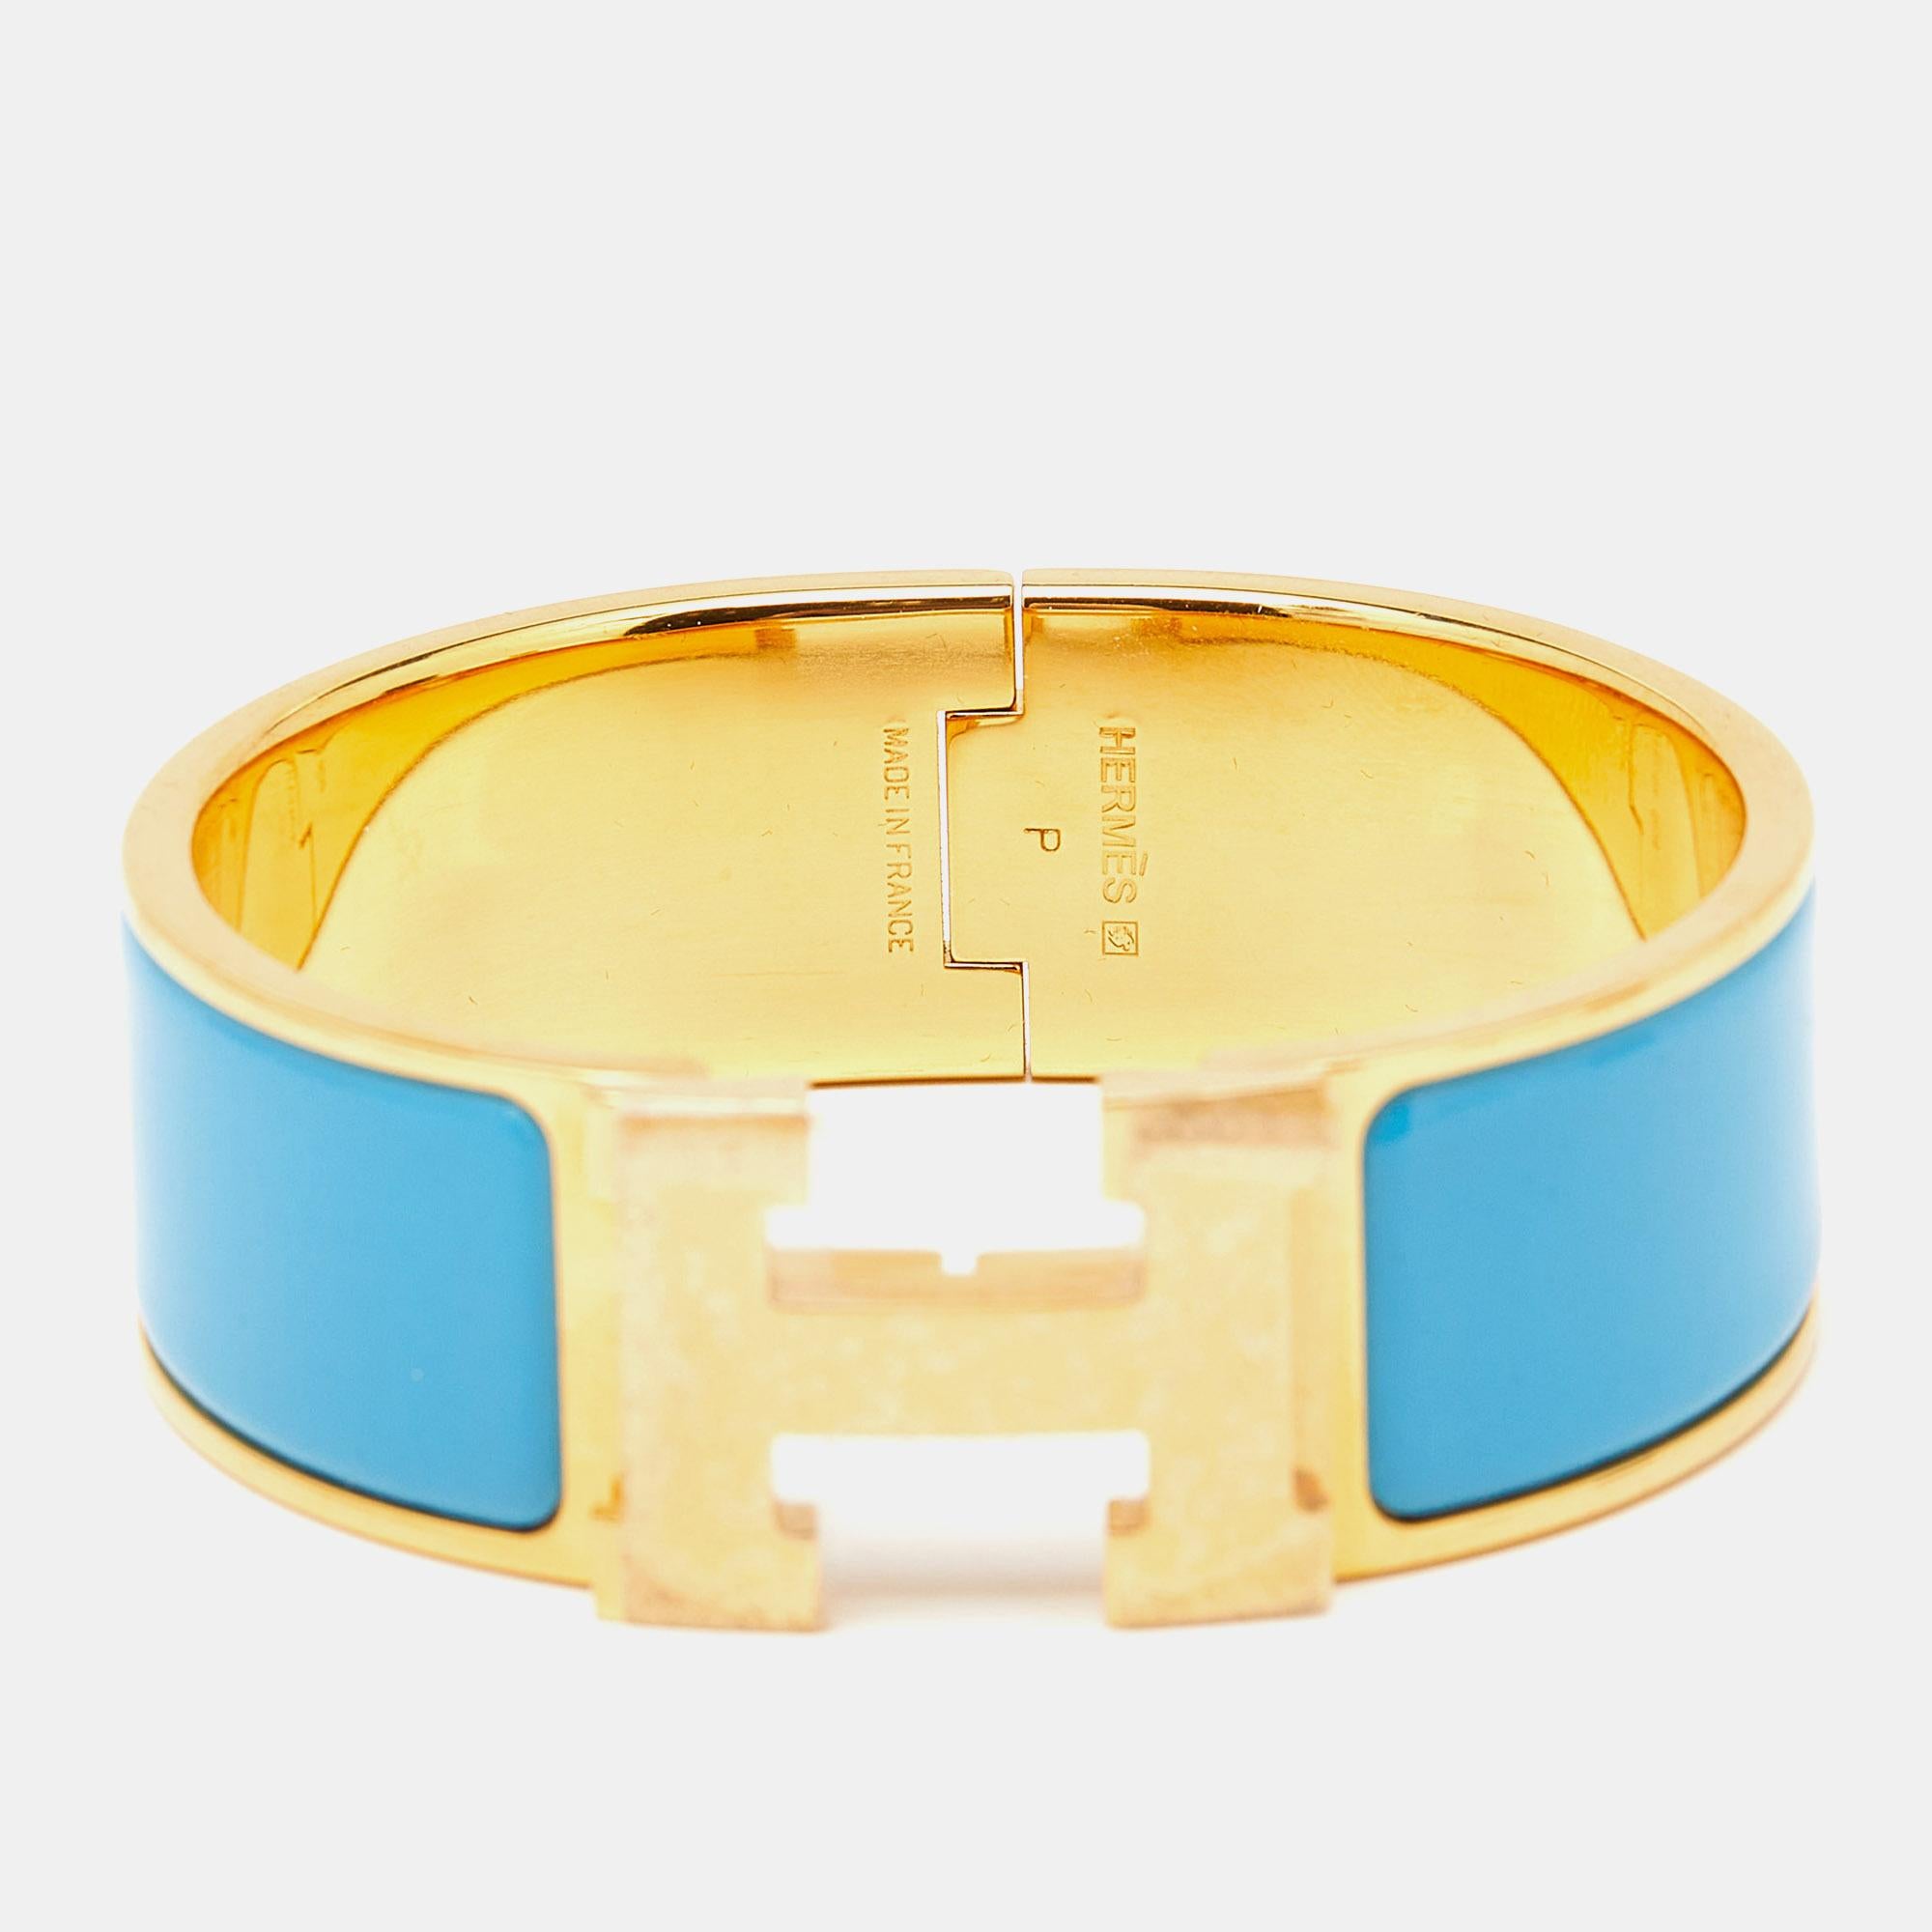 Das Hermès Clic Clac H-Armband ist ein exquisites Schmuckstück. Das glänzend blaue Emailleband mit der markanten vergoldeten H-förmigen Schließe bildet einen auffälligen Kontrast. Dieses luxuriöse und elegante Accessoire verkörpert zeitlosen Stil